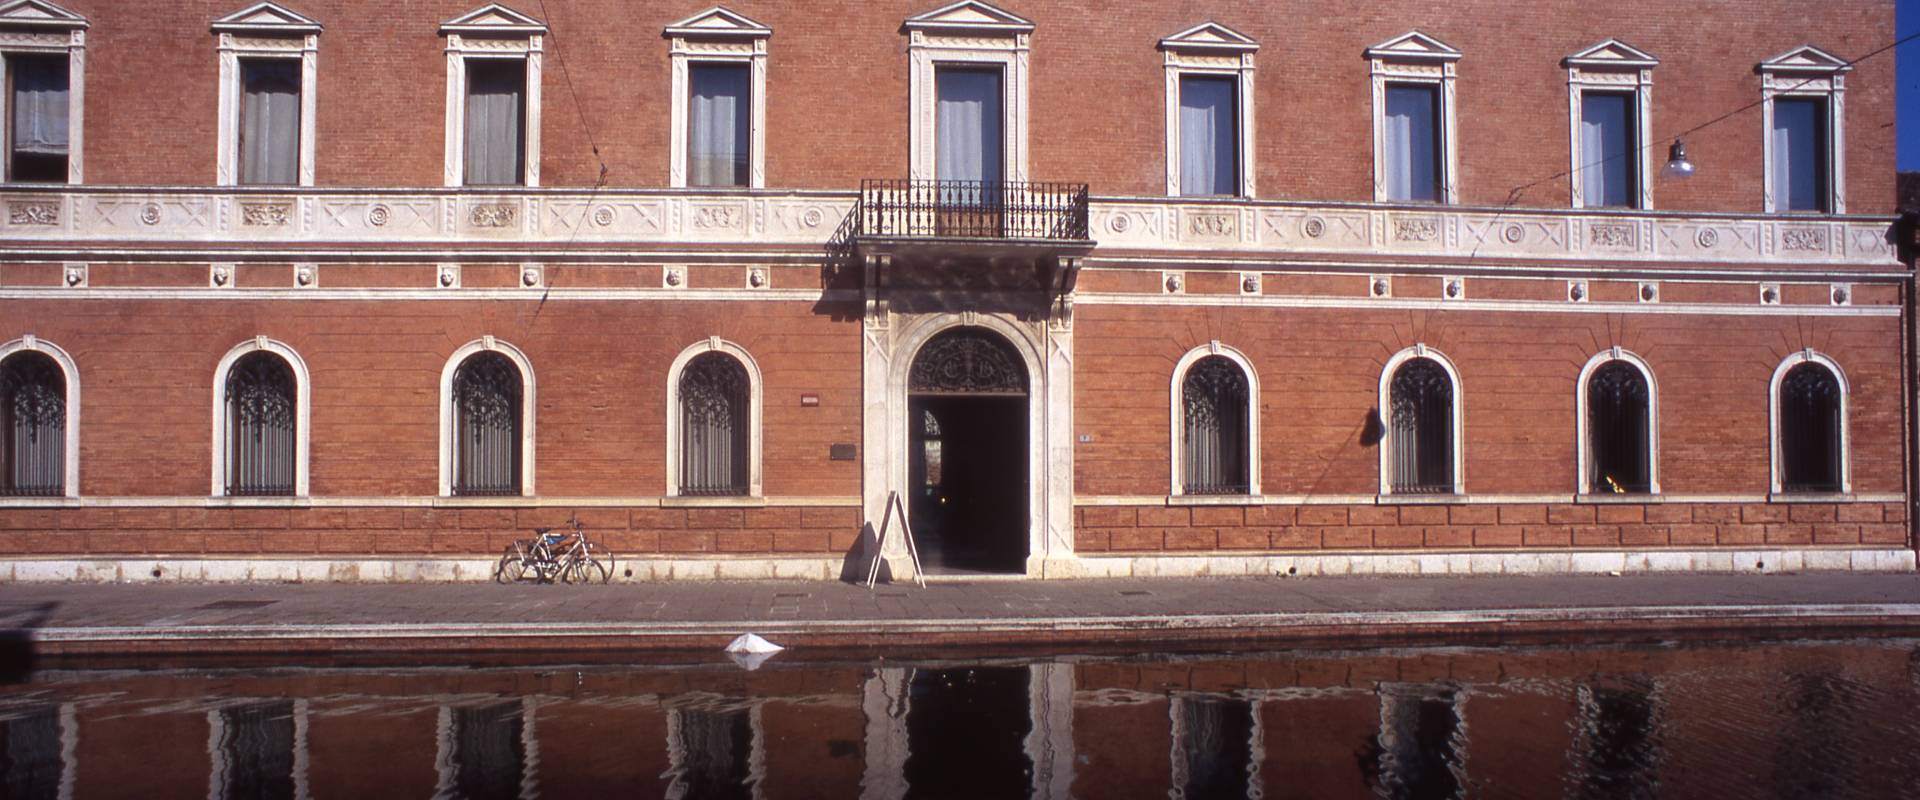 Palazzo Bellini foto di zappaterra